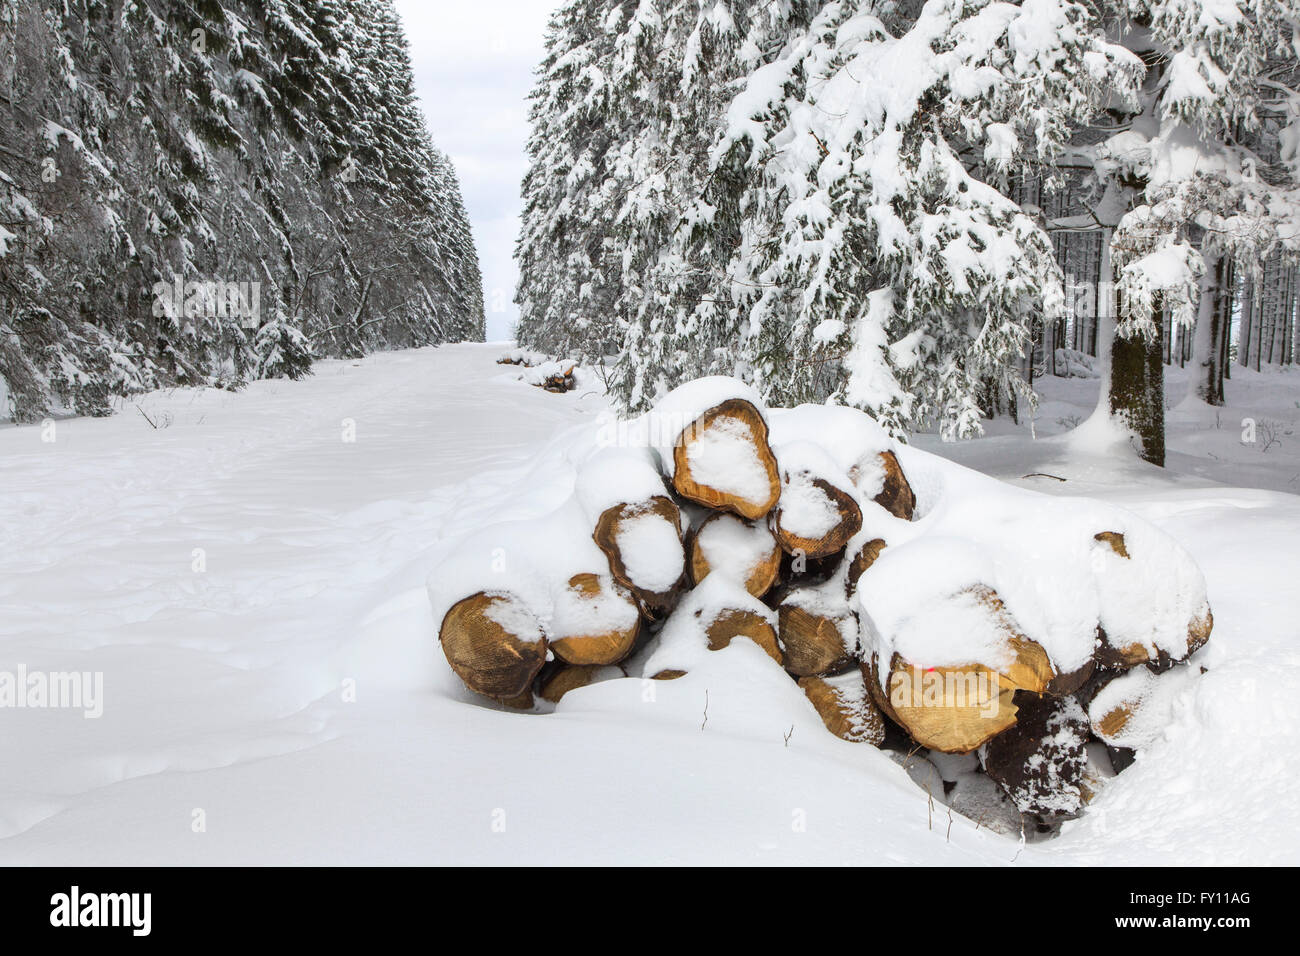 Des piles de journaux de coupe coupe-feu en recouverts de neige en hiver dans les Hautes Fagnes / Hautes Fagnes, Ardennes Belges, Belgique Banque D'Images